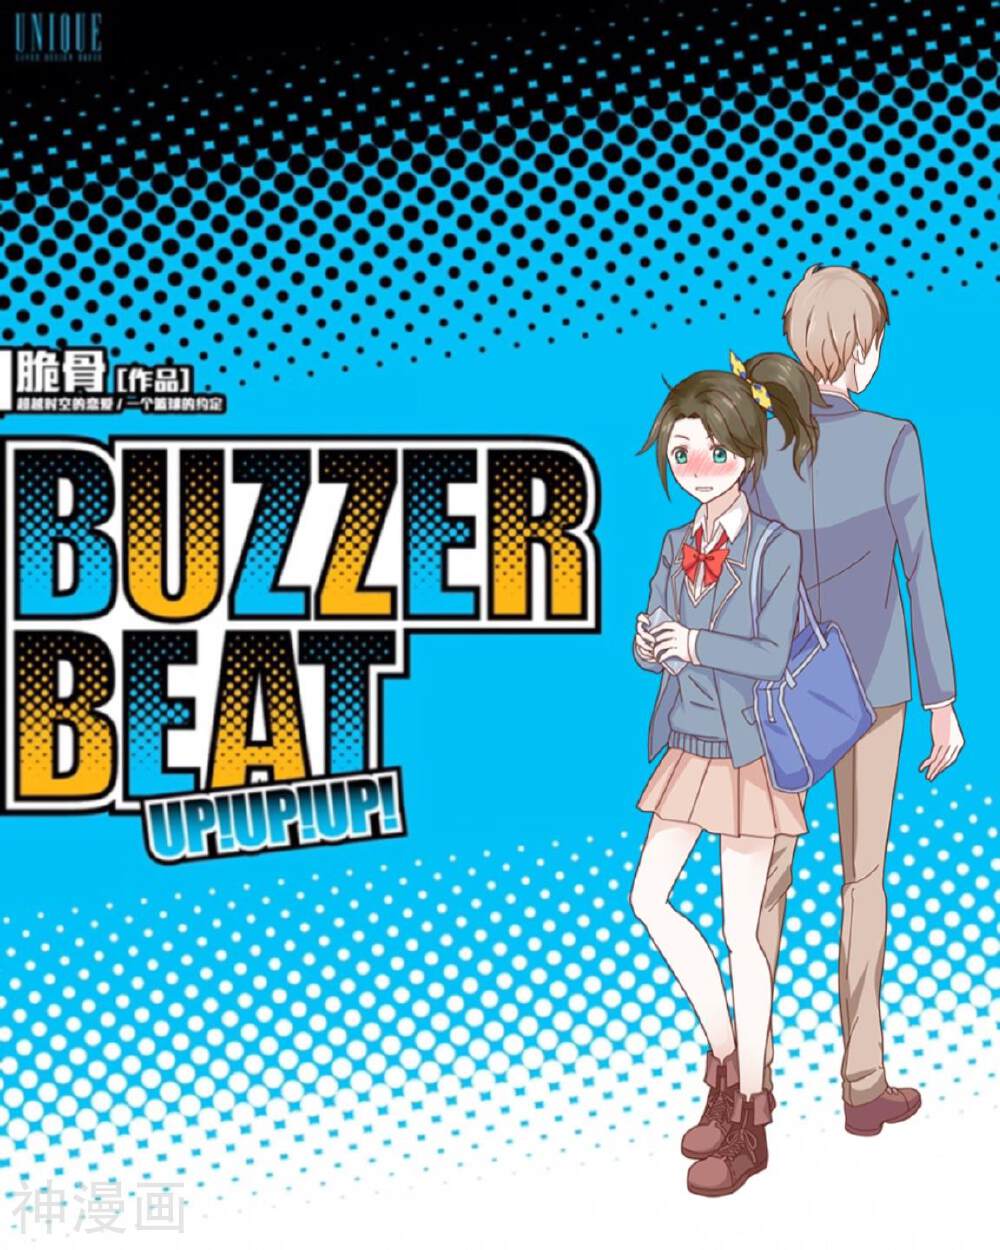 Buzzer Beat 零秒出手漫画全集下拉 第32话地狱式训练up 漫漫看漫画网